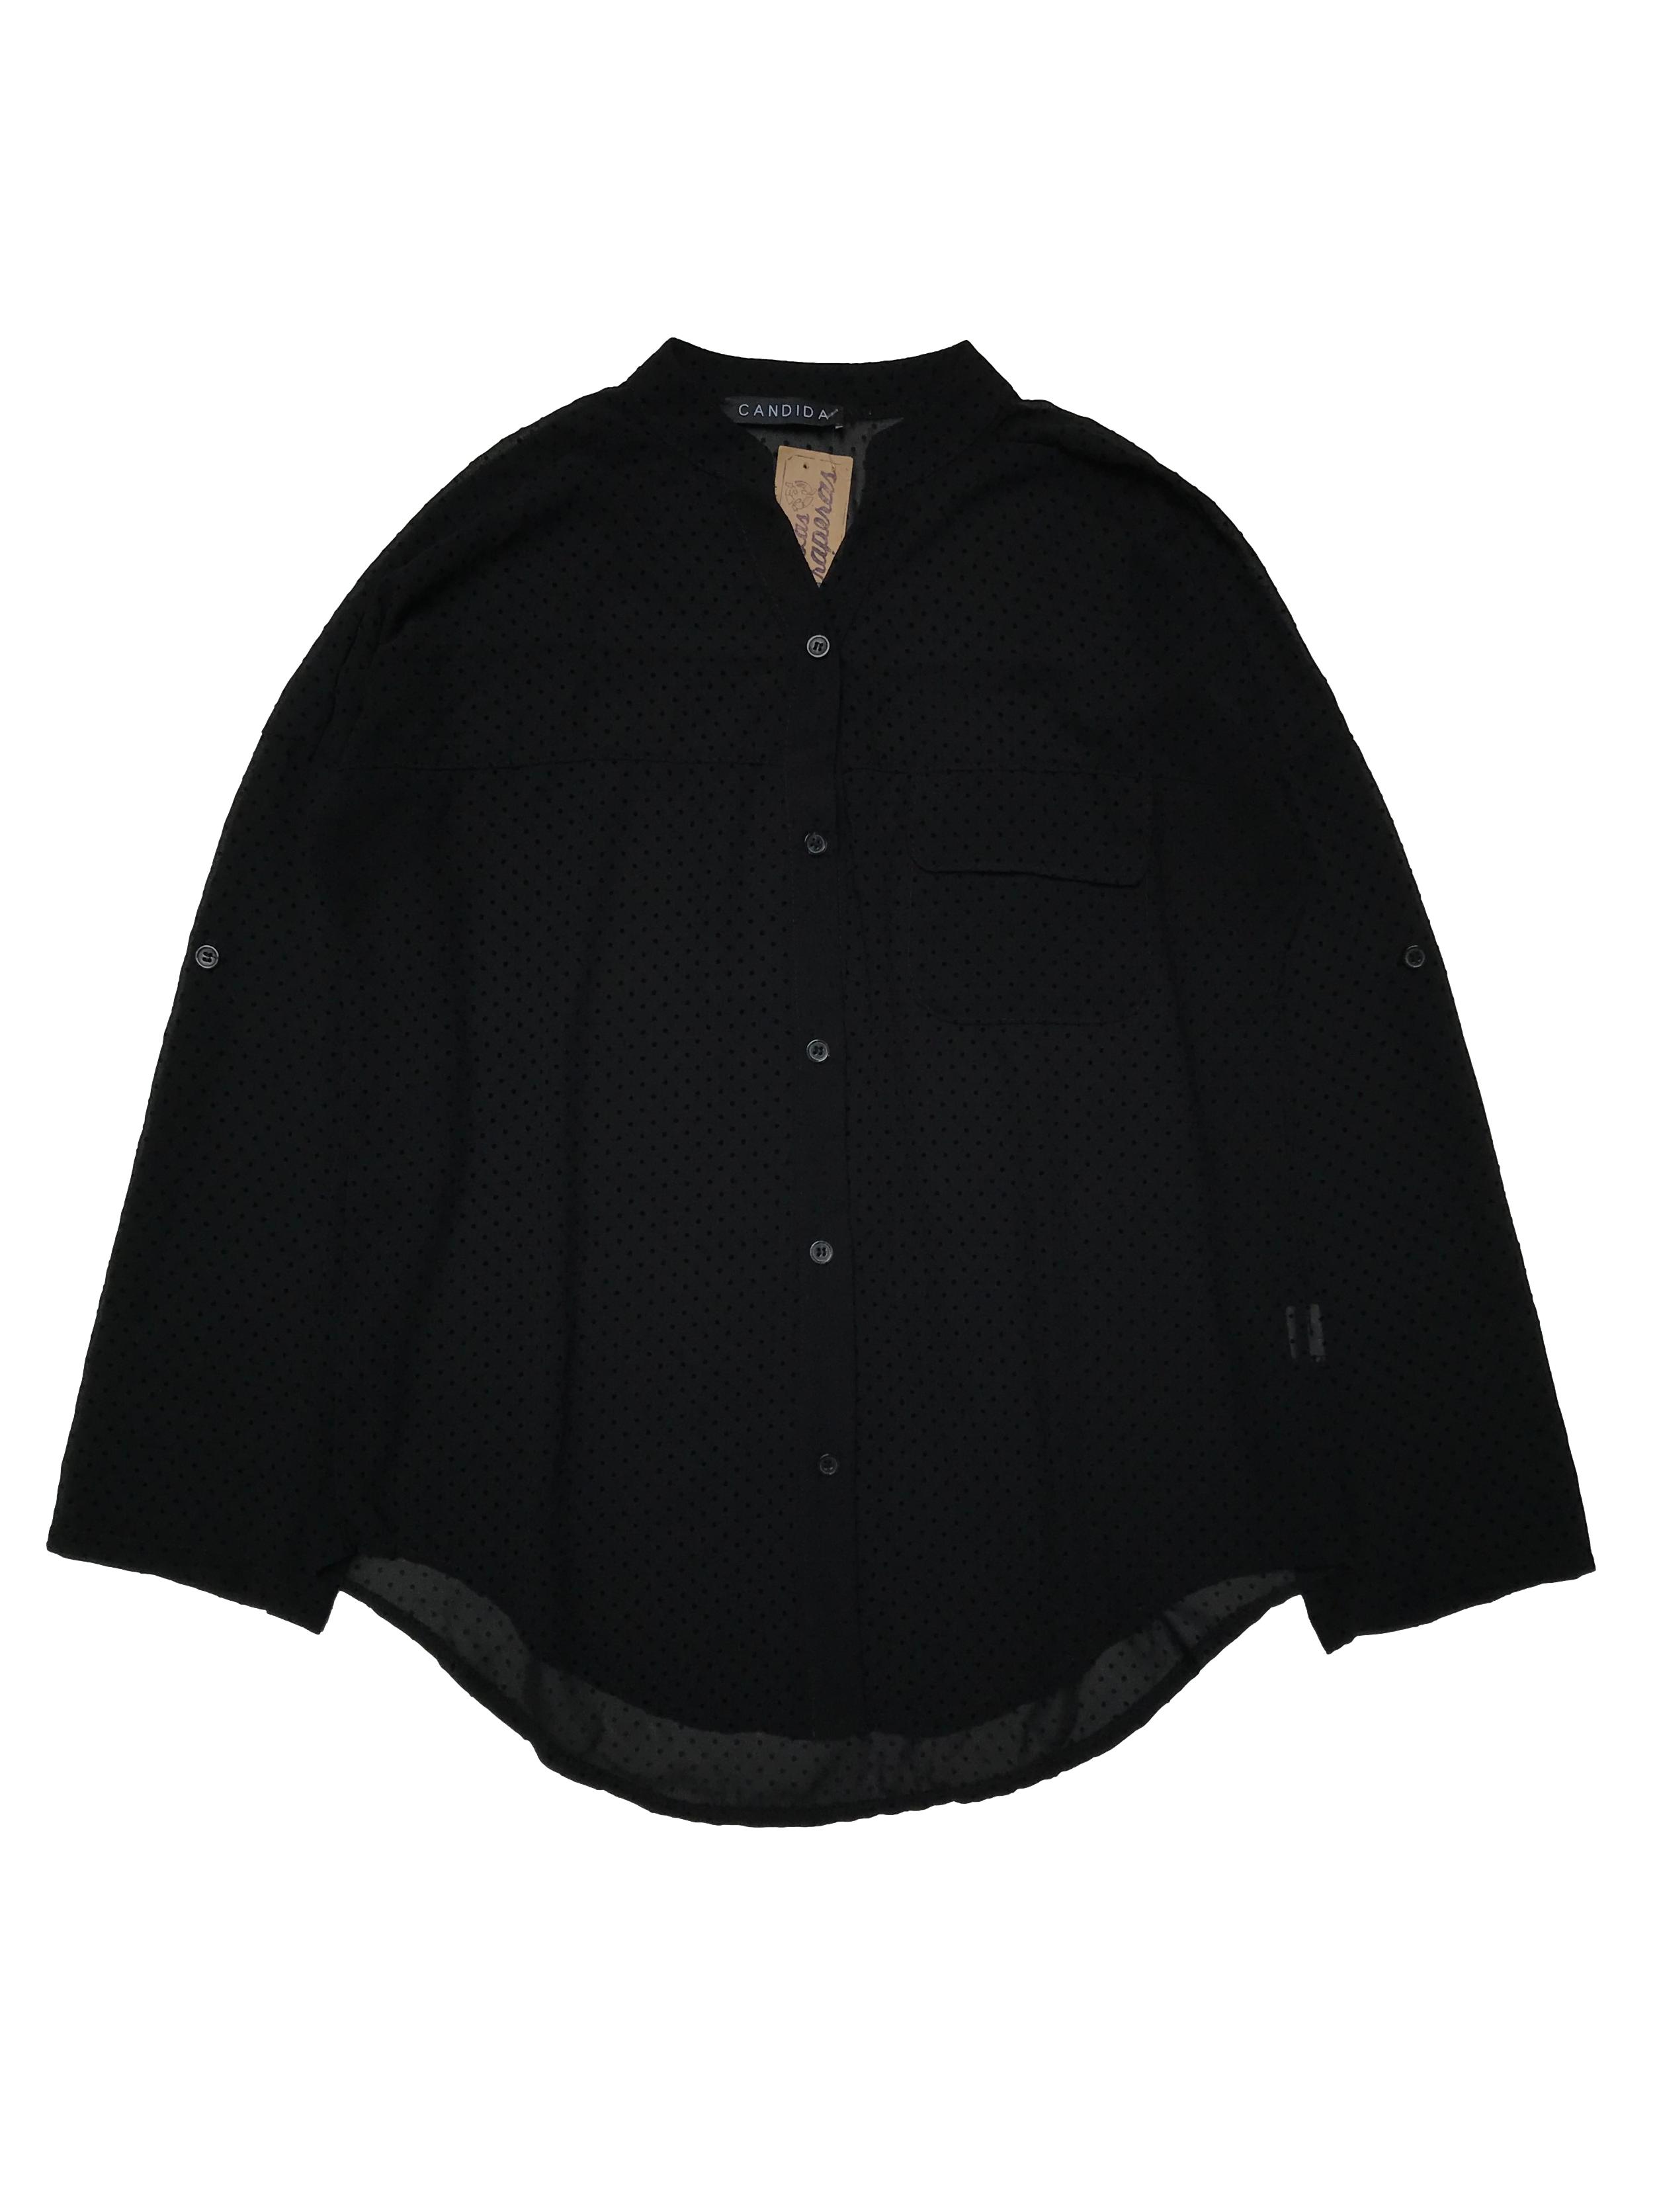 Blusa negra de gasa con textura de puntos en plush, canesú en la espalda, modelo suelto. , manga regulable con botón. Largo 60cm. Ancho 110 cm.  